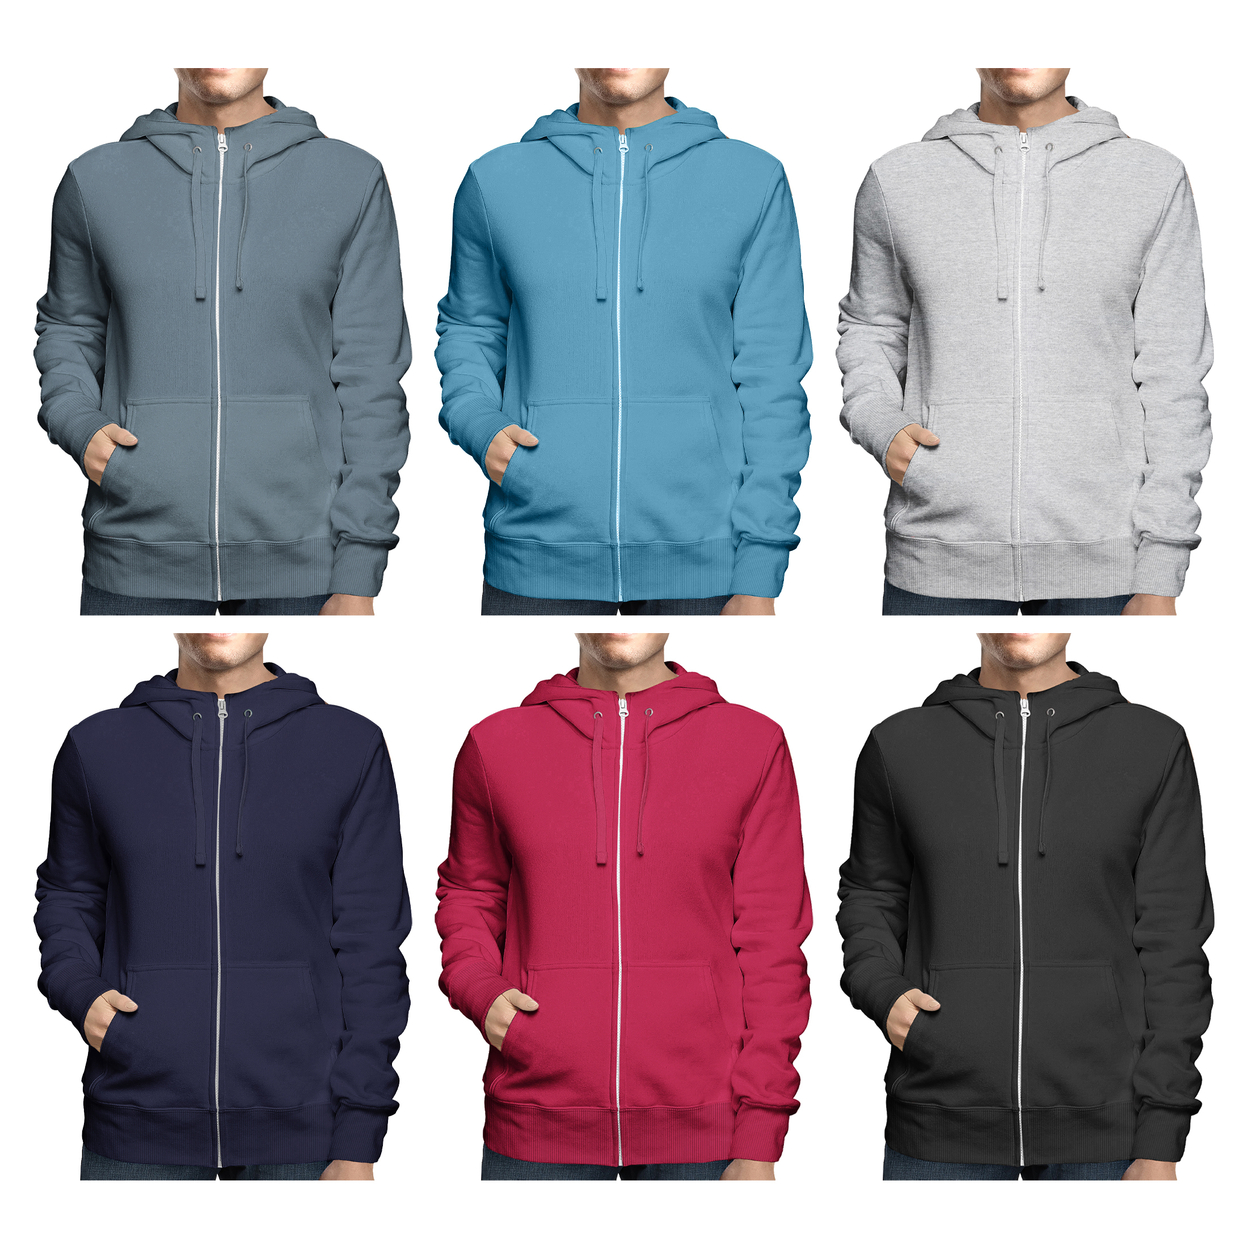 Men's Winter Warm Cozy Full Zip-Up Fleece Lined Soft Hoodie Sweatshirt - Grey, Xx-large